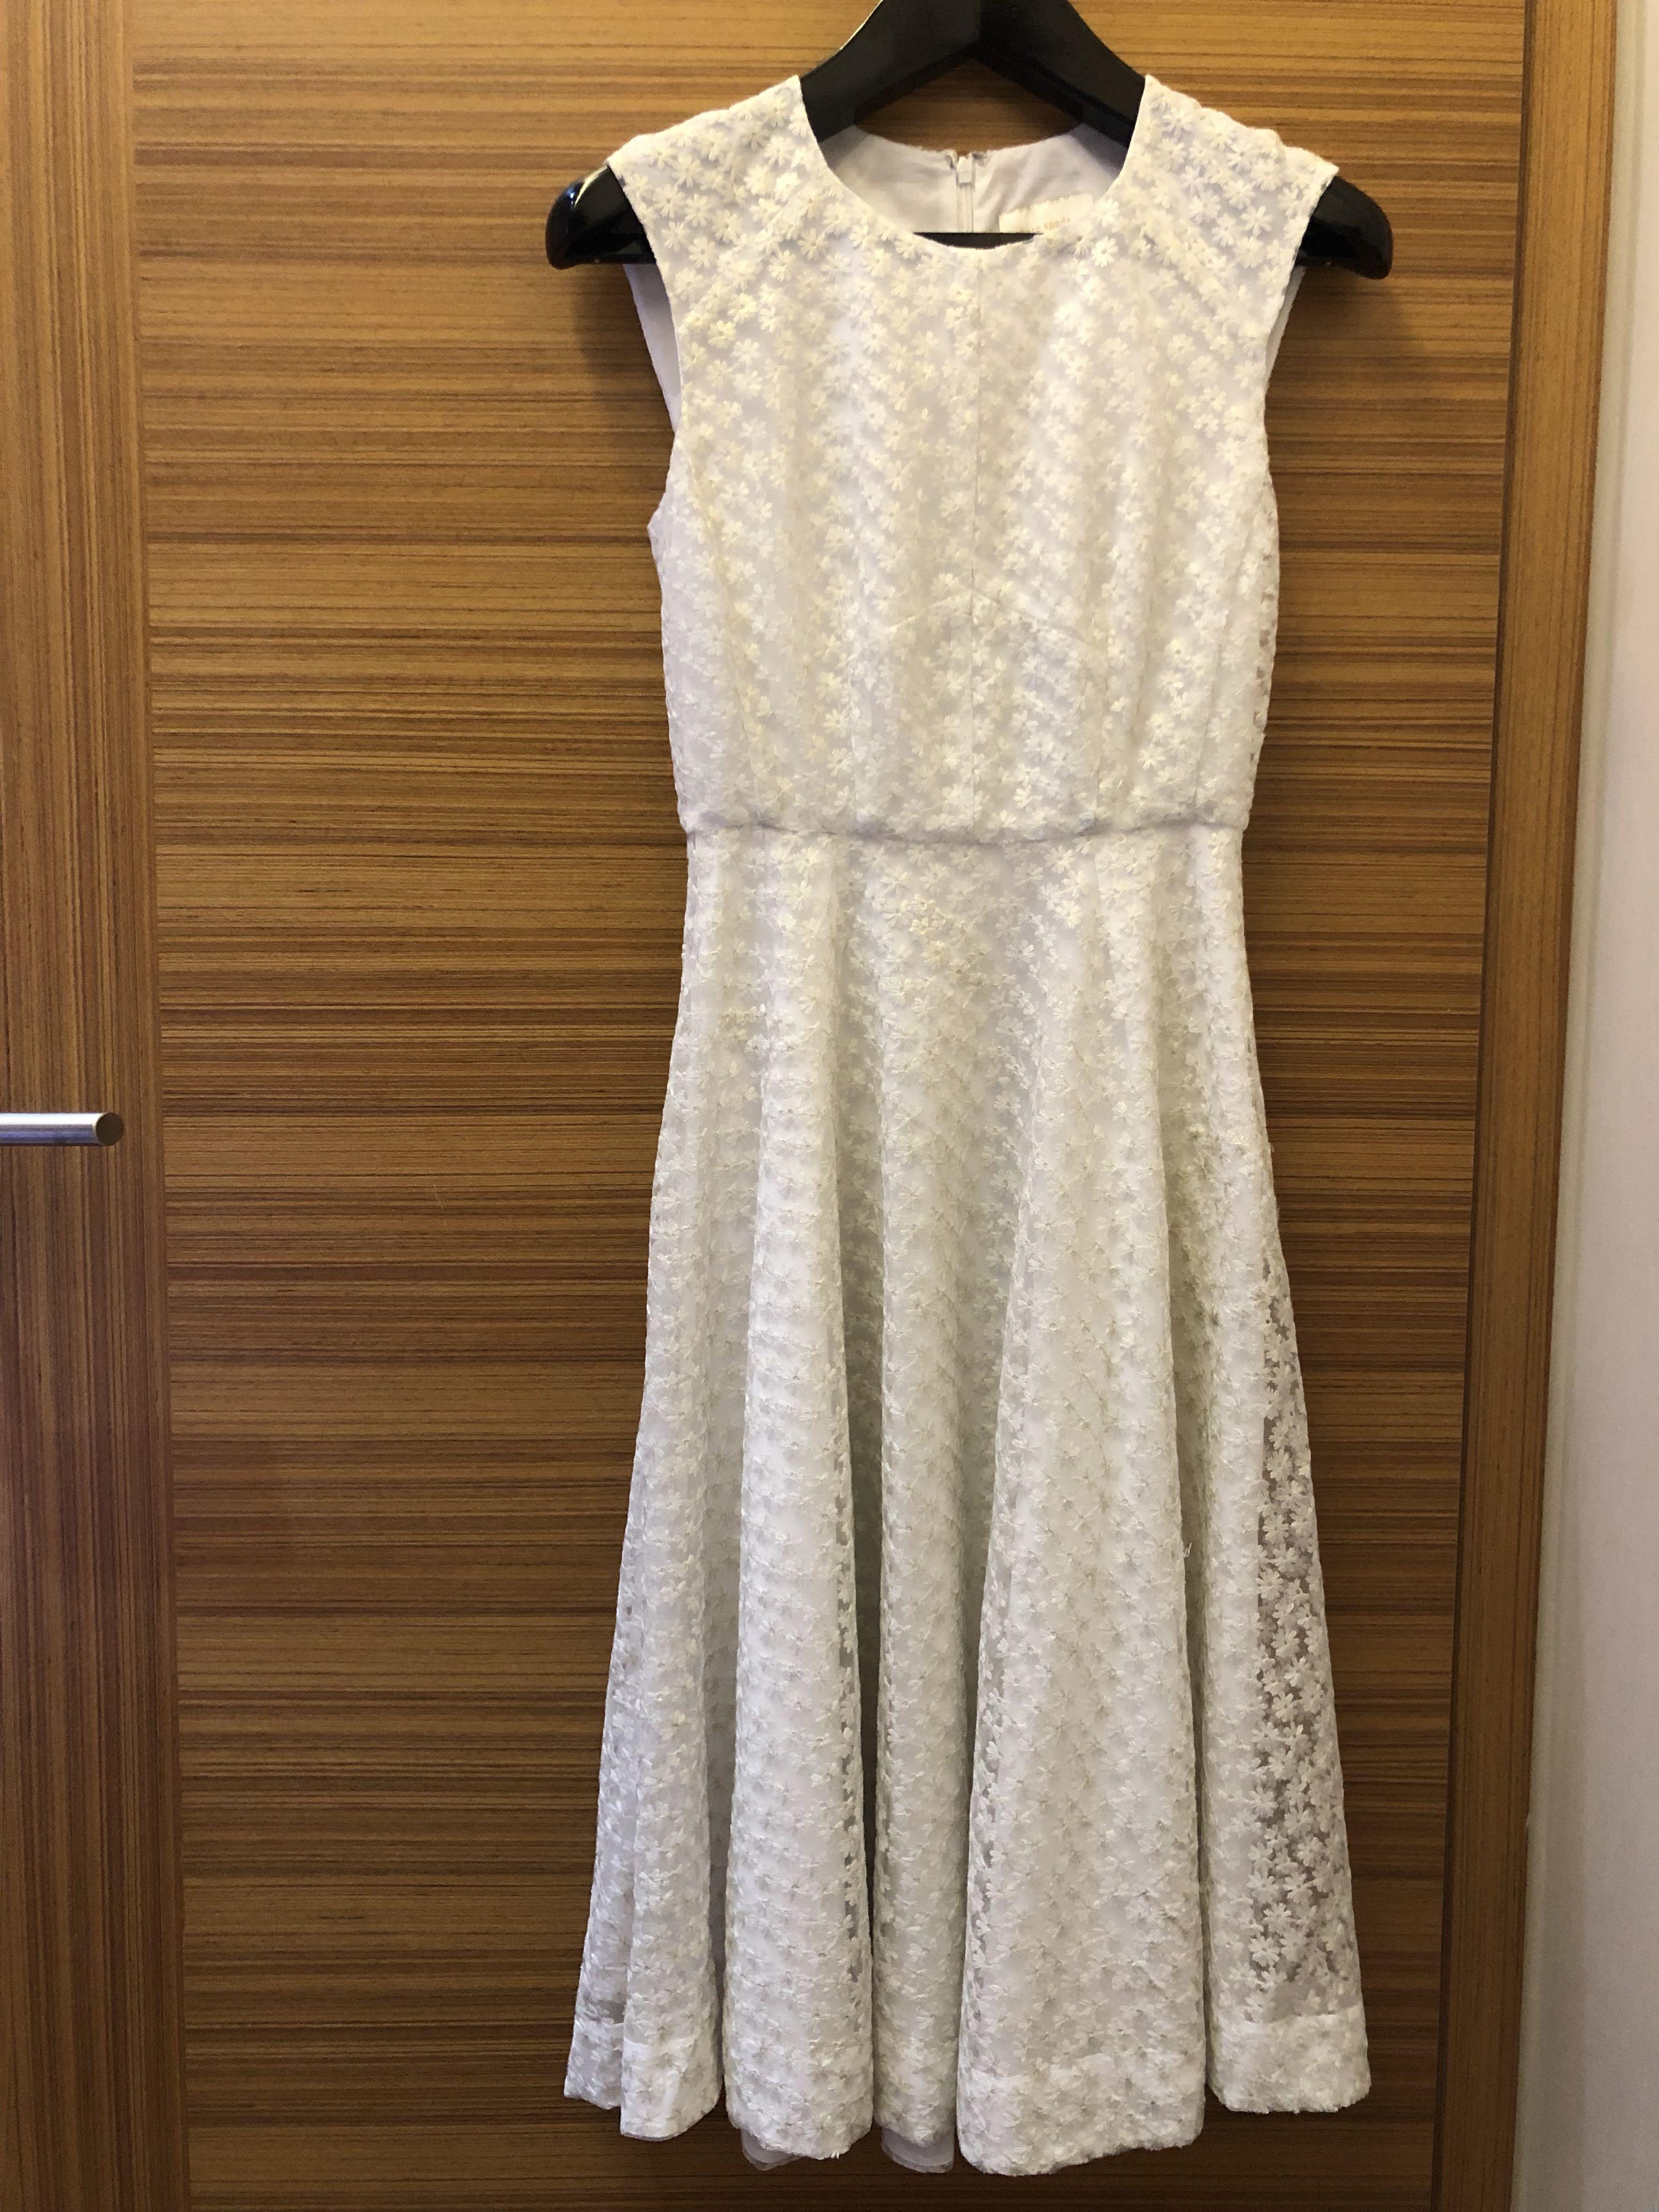 kate spade white lace dress